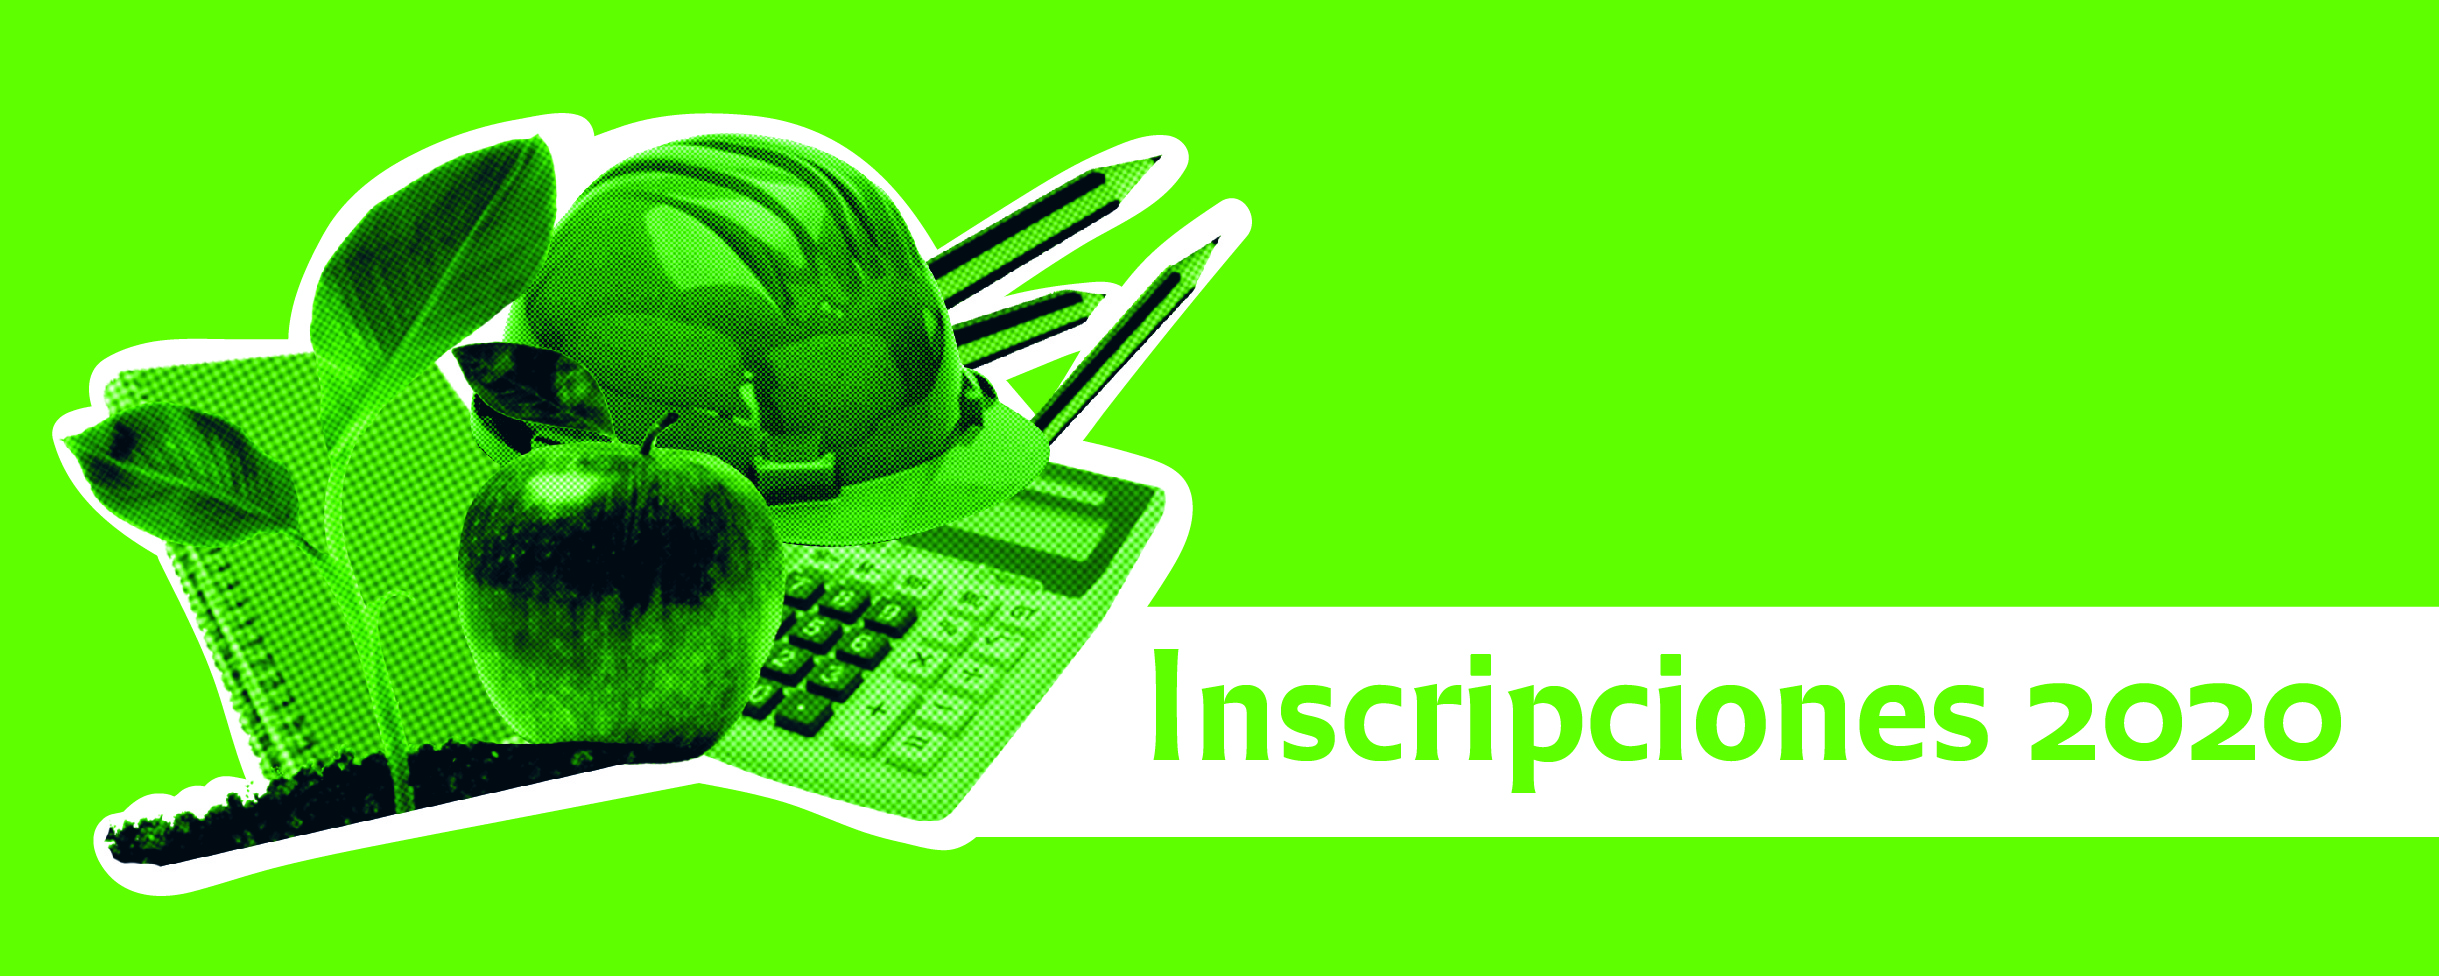 Un gráfico con una manzana verde, un casco de obrero, una calculadora y en letras dice Inscripciones 2020